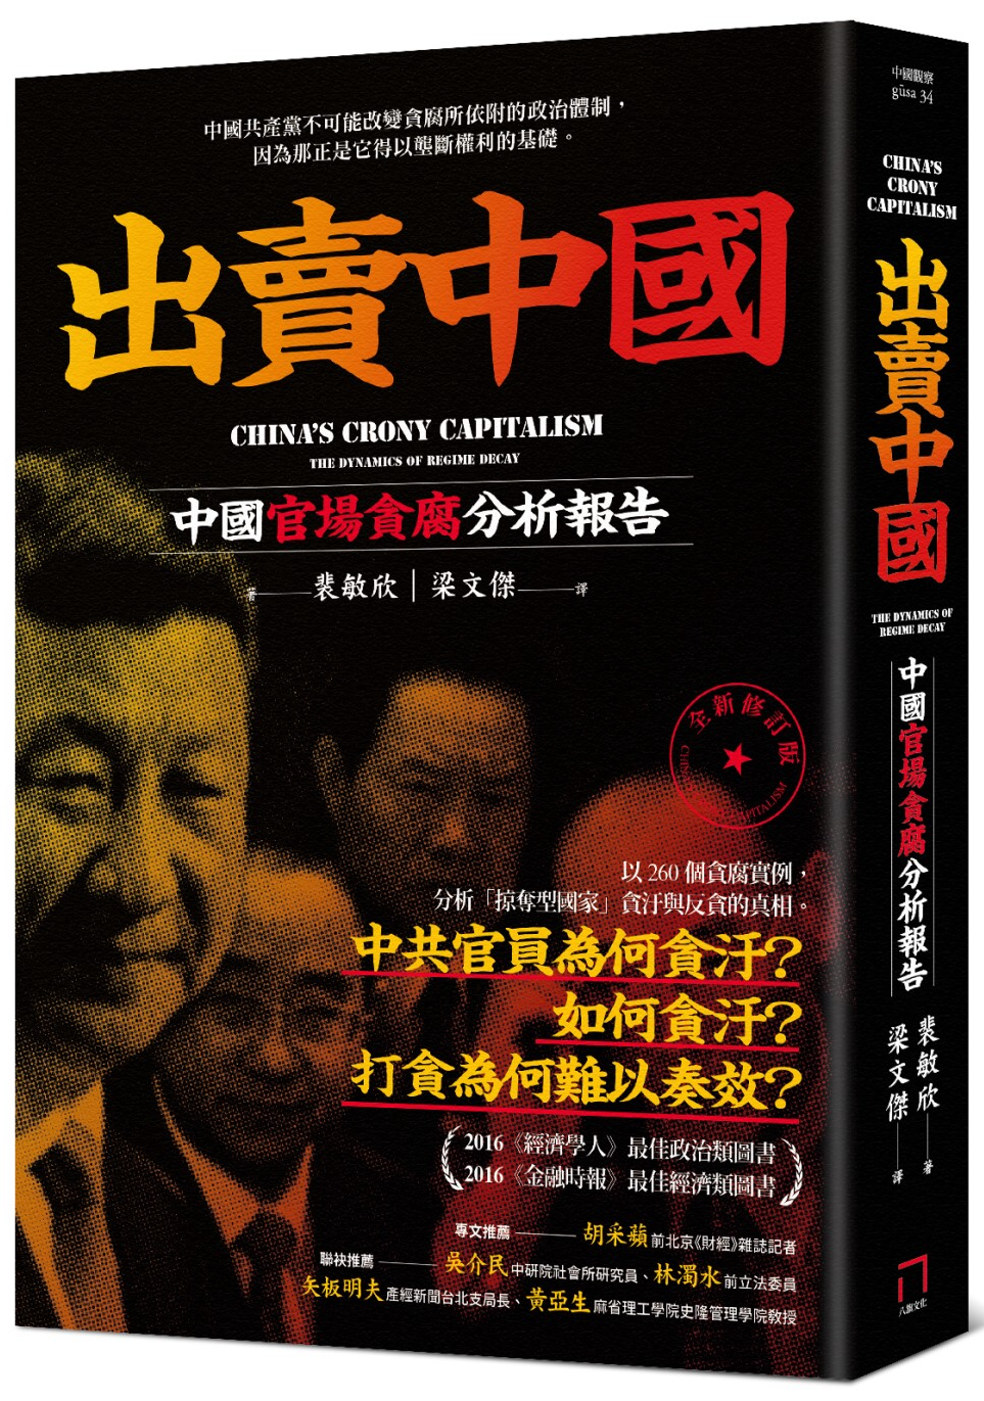 出賣中國：中國官場貪腐分析報告(全新修訂版)